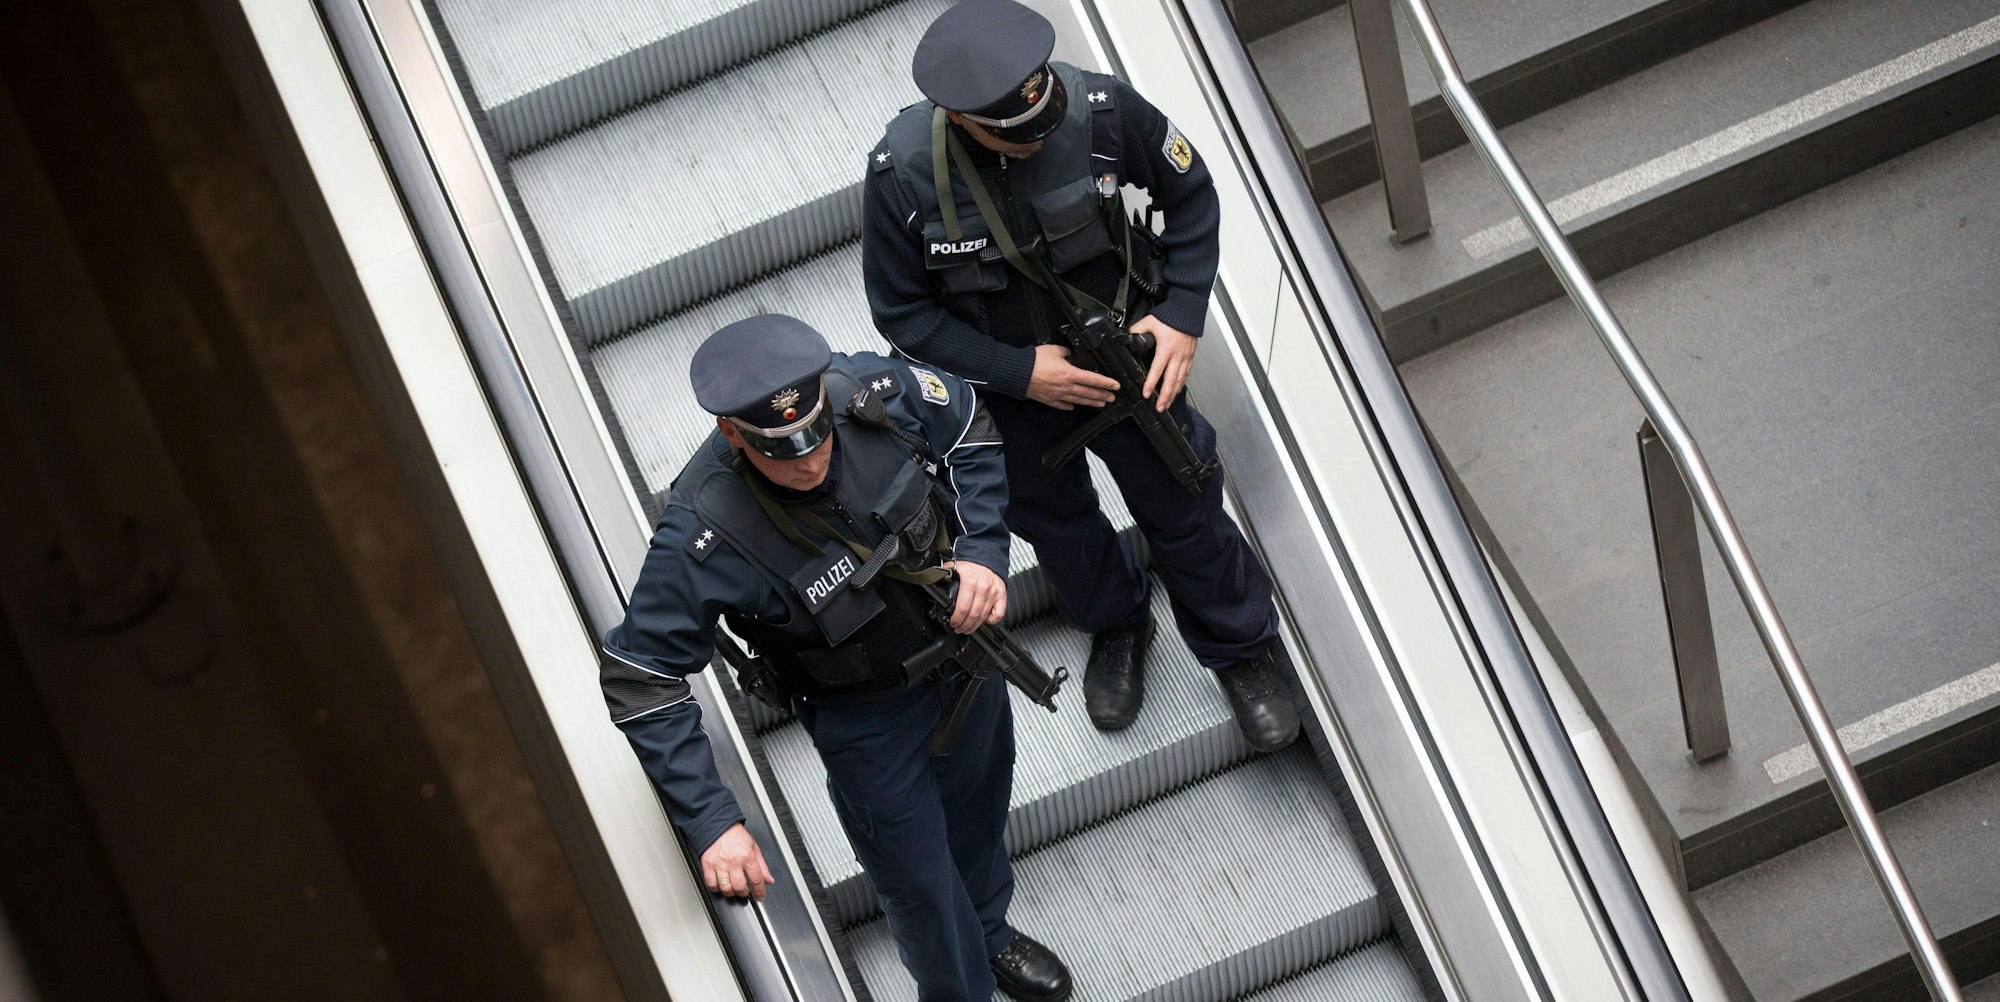 Polizei_symbolbild_bundespolizei